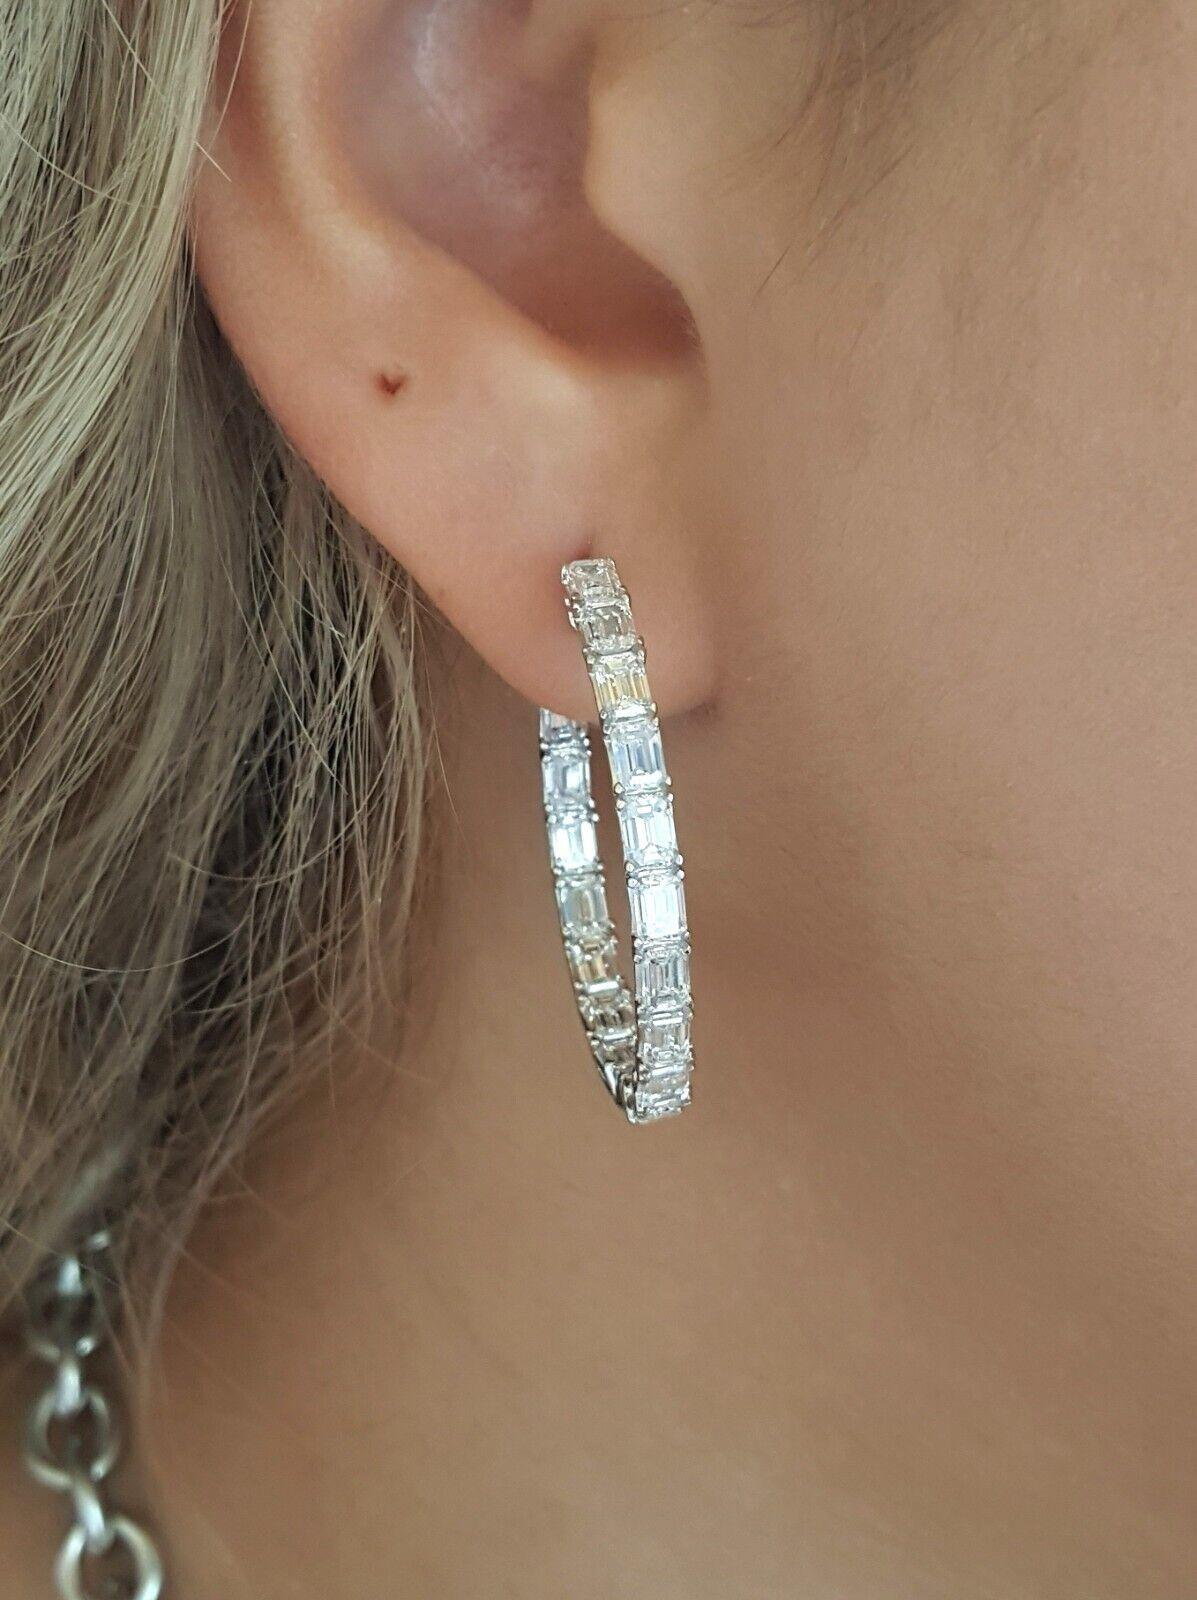 Boucles d'oreilles en diamant taille émeraude de 5 carats
poids total approximatif de 5 ct. Les diamants sont de couleur G-H et de pureté VS1-SI1.

